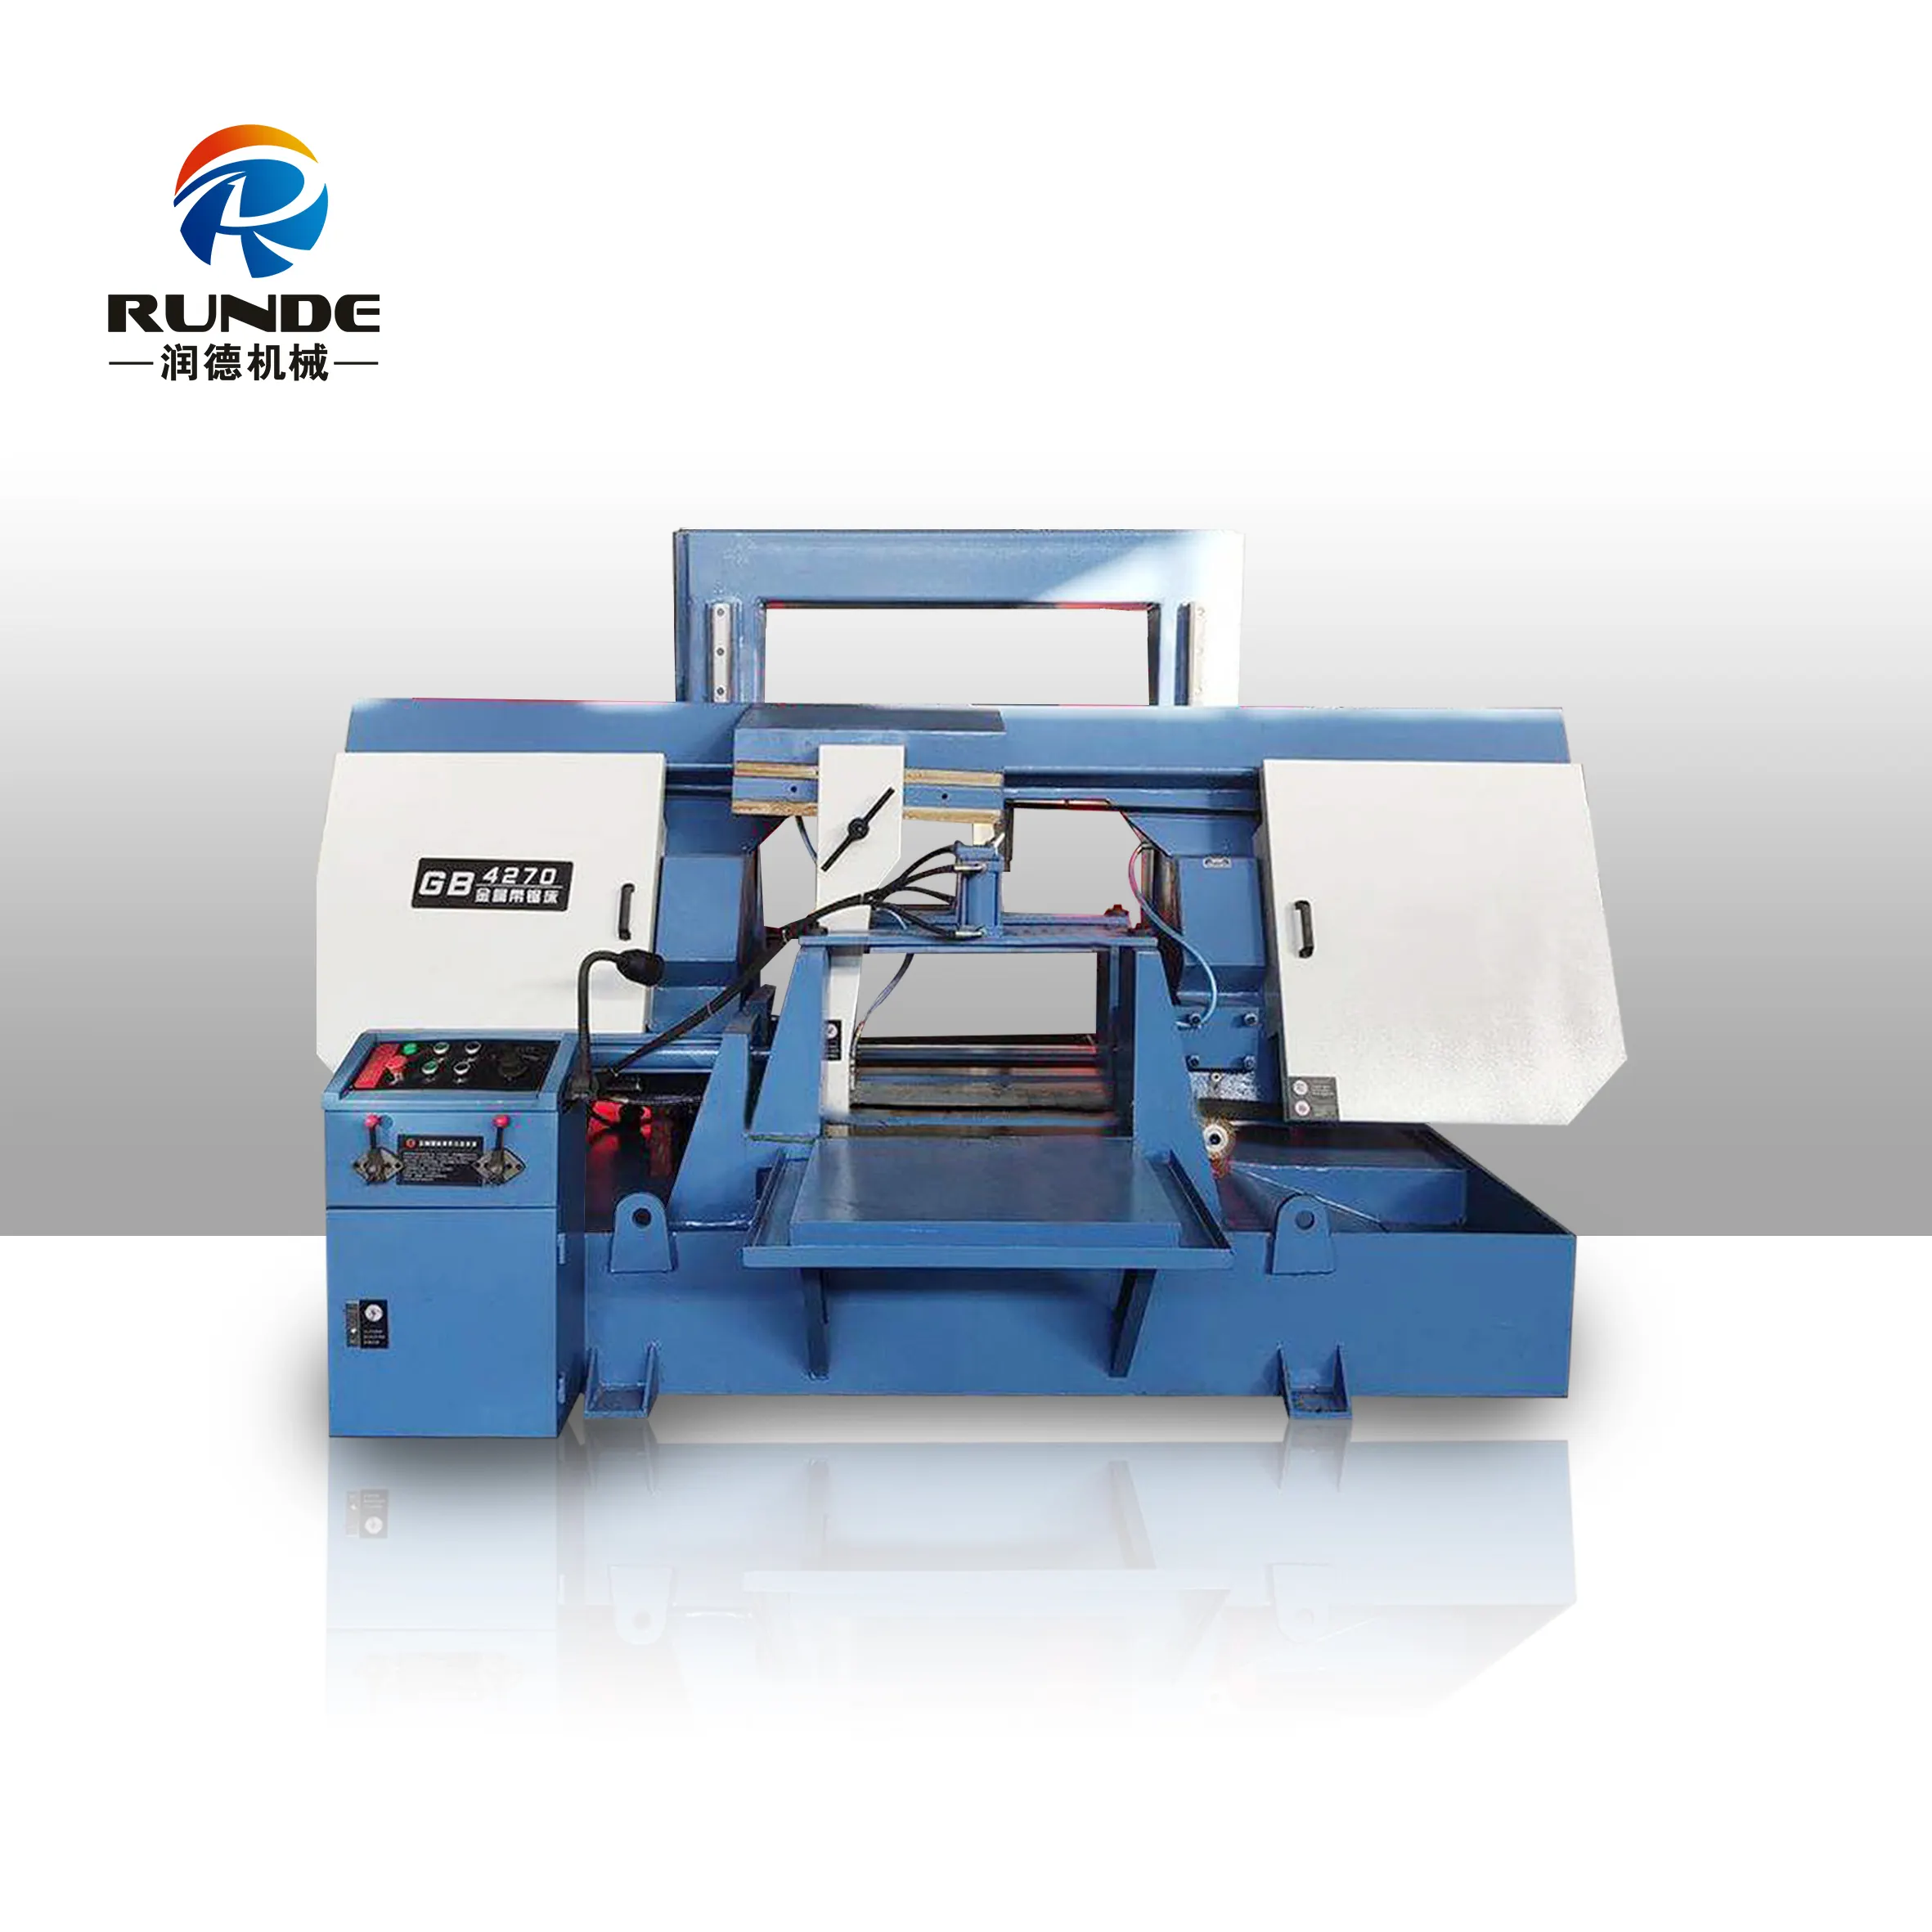 ماكينة قطع المعادن الأوتوماتيكية منشار بشريط من مصنع شركة RUNDE الصينية، ماكينة النشر GH4270